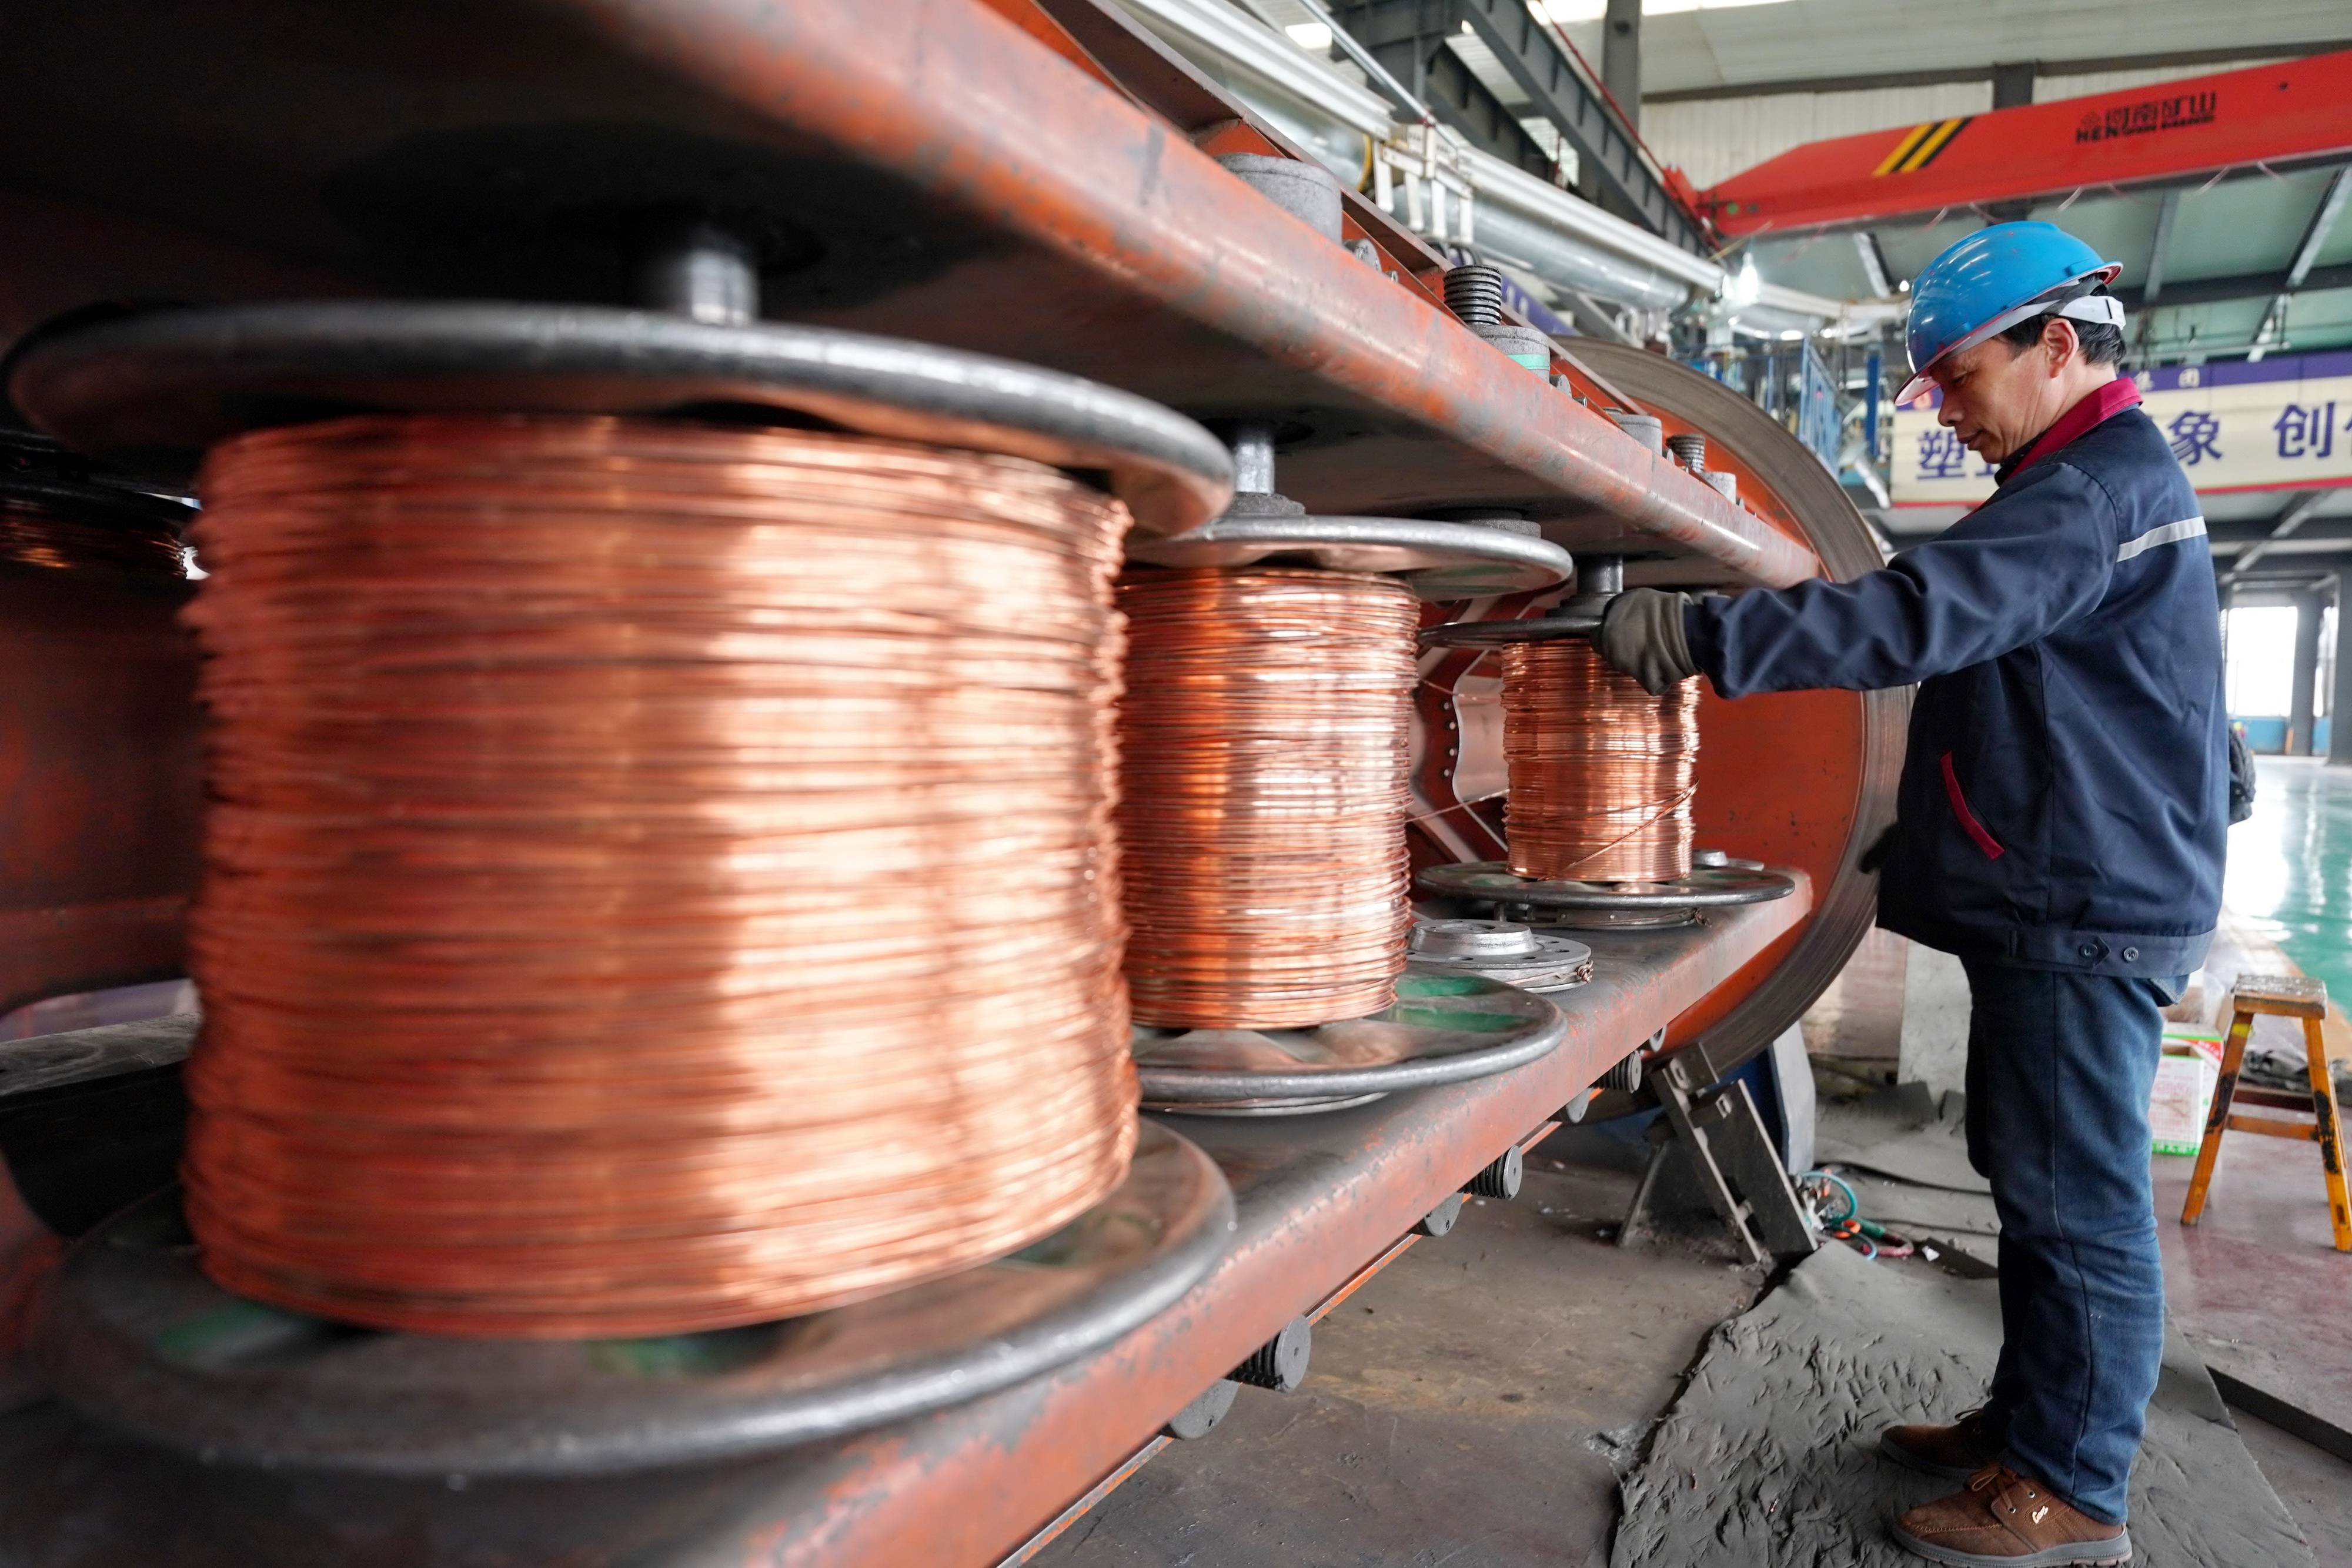 4月22日,工人在河北省宁晋县一家电线电缆生产企业车间内工作.